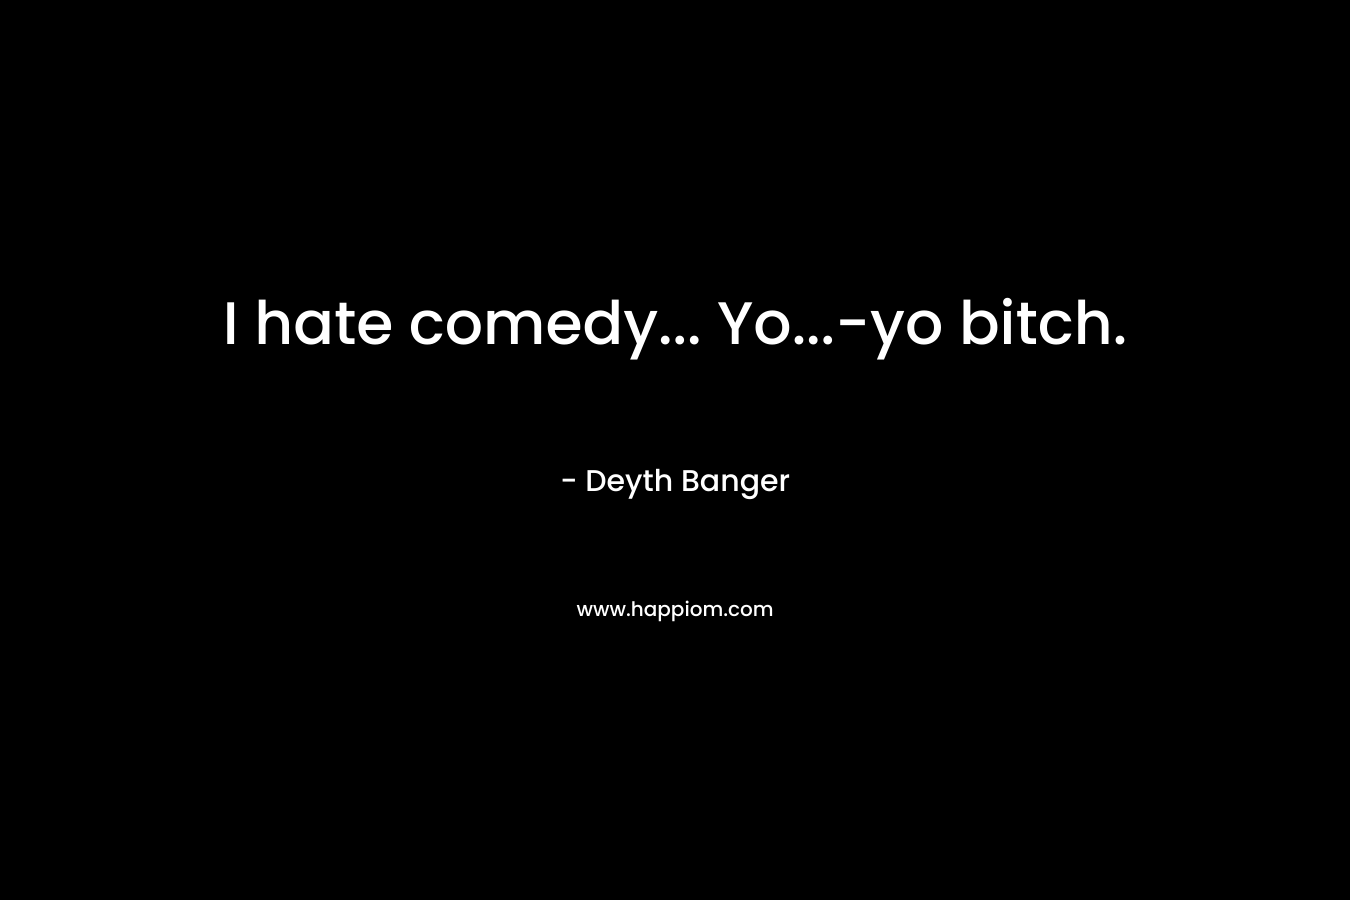 I hate comedy... Yo...-yo bitch.